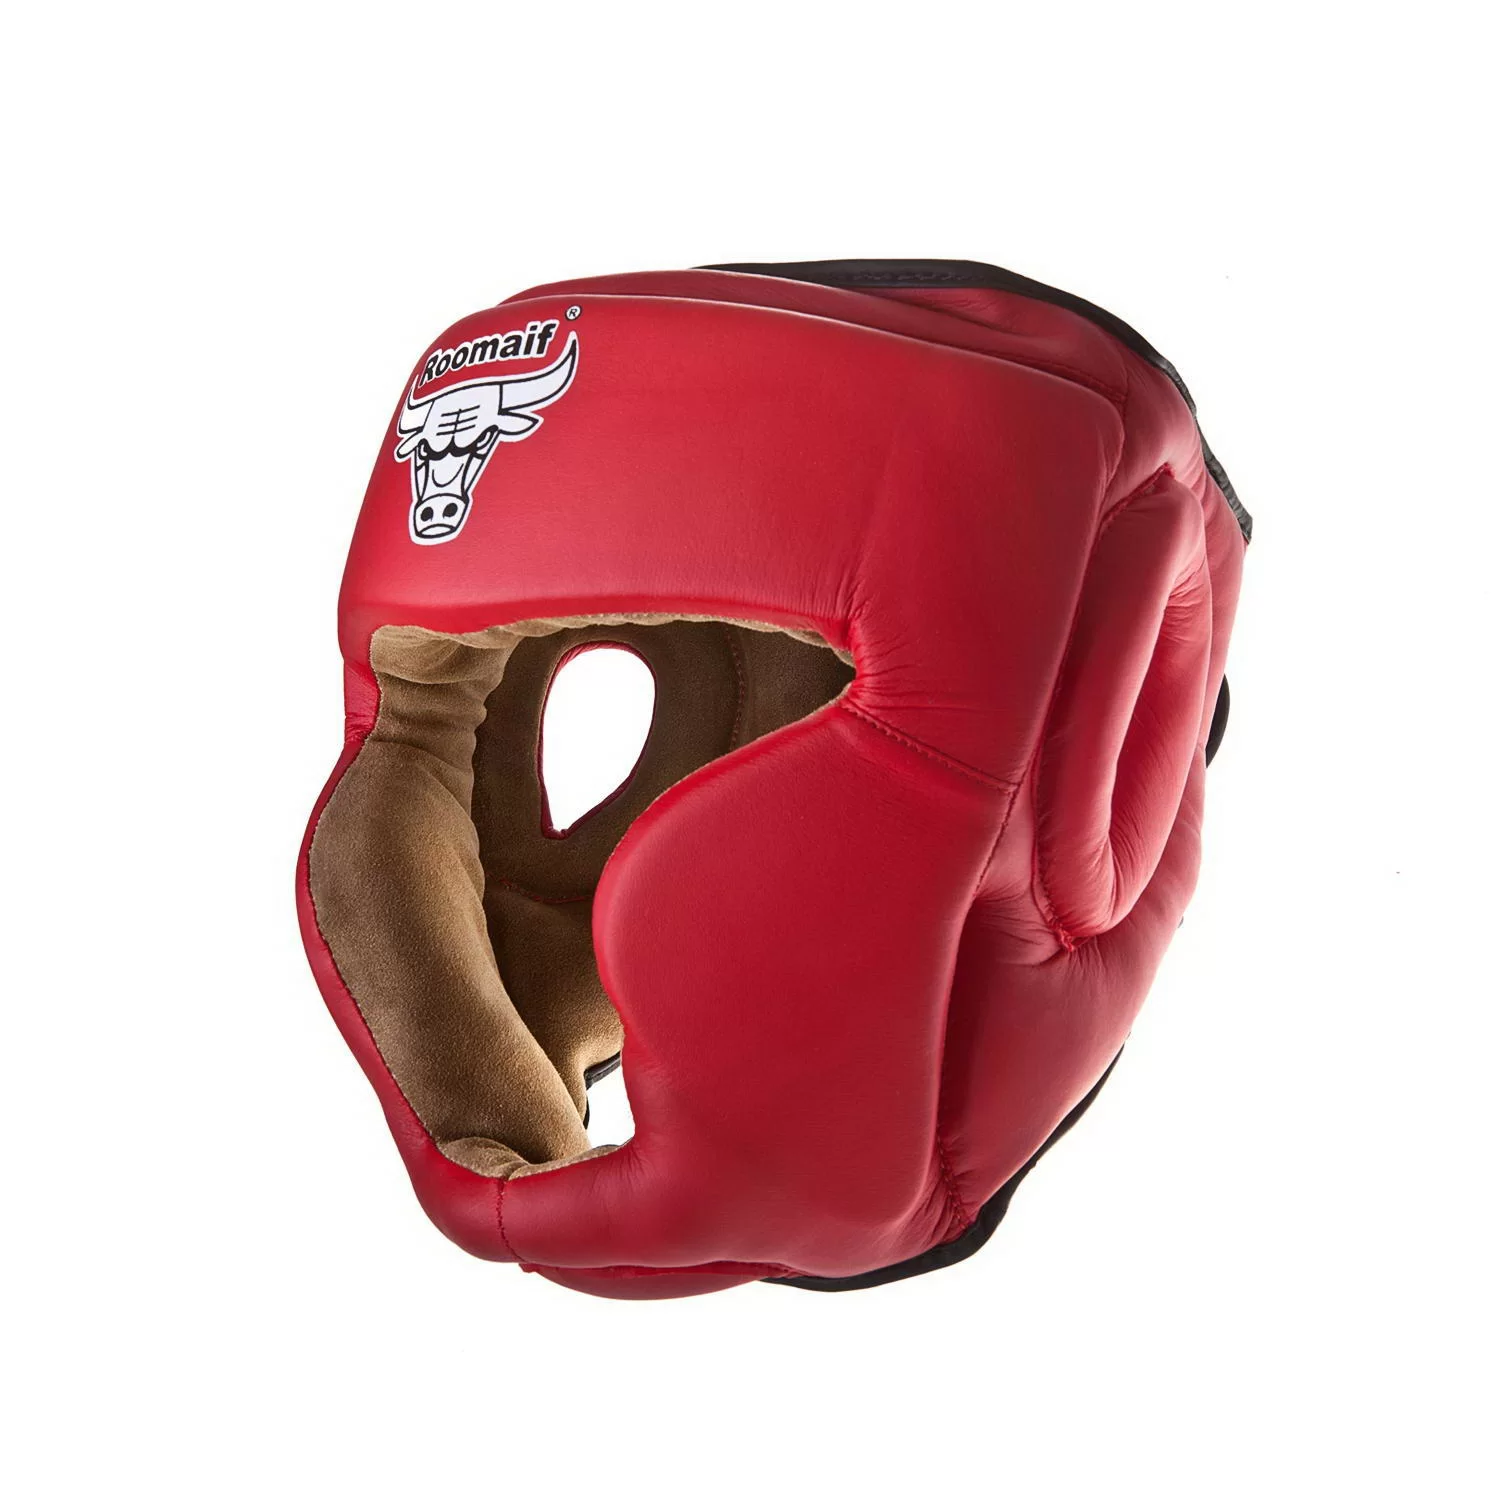 Реальное фото Шлем боксерский Roomaif RHG-140 PL защитный красный от магазина СпортЕВ